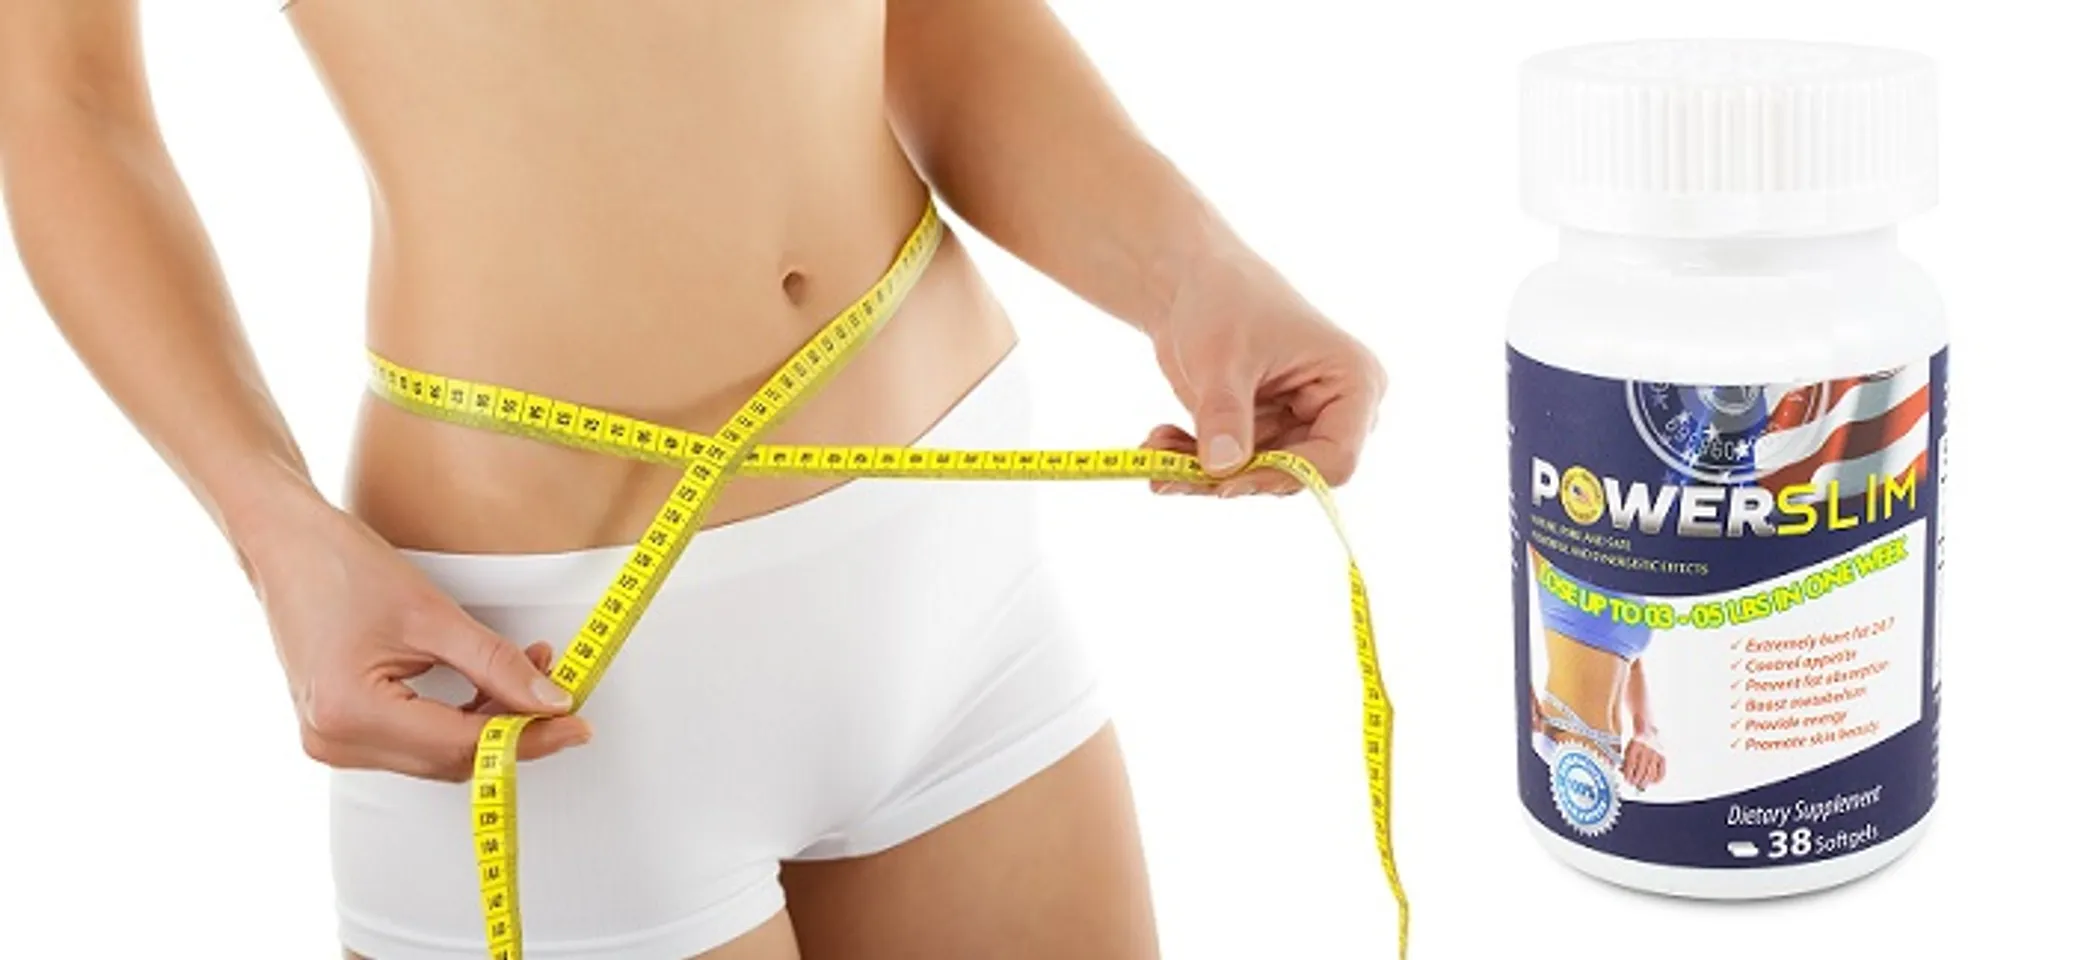 Power Slim dùng cho cả nam giới và nữ giới, những người thừa cân, người béo phì đang trong chế độ ăn uống giảm cân